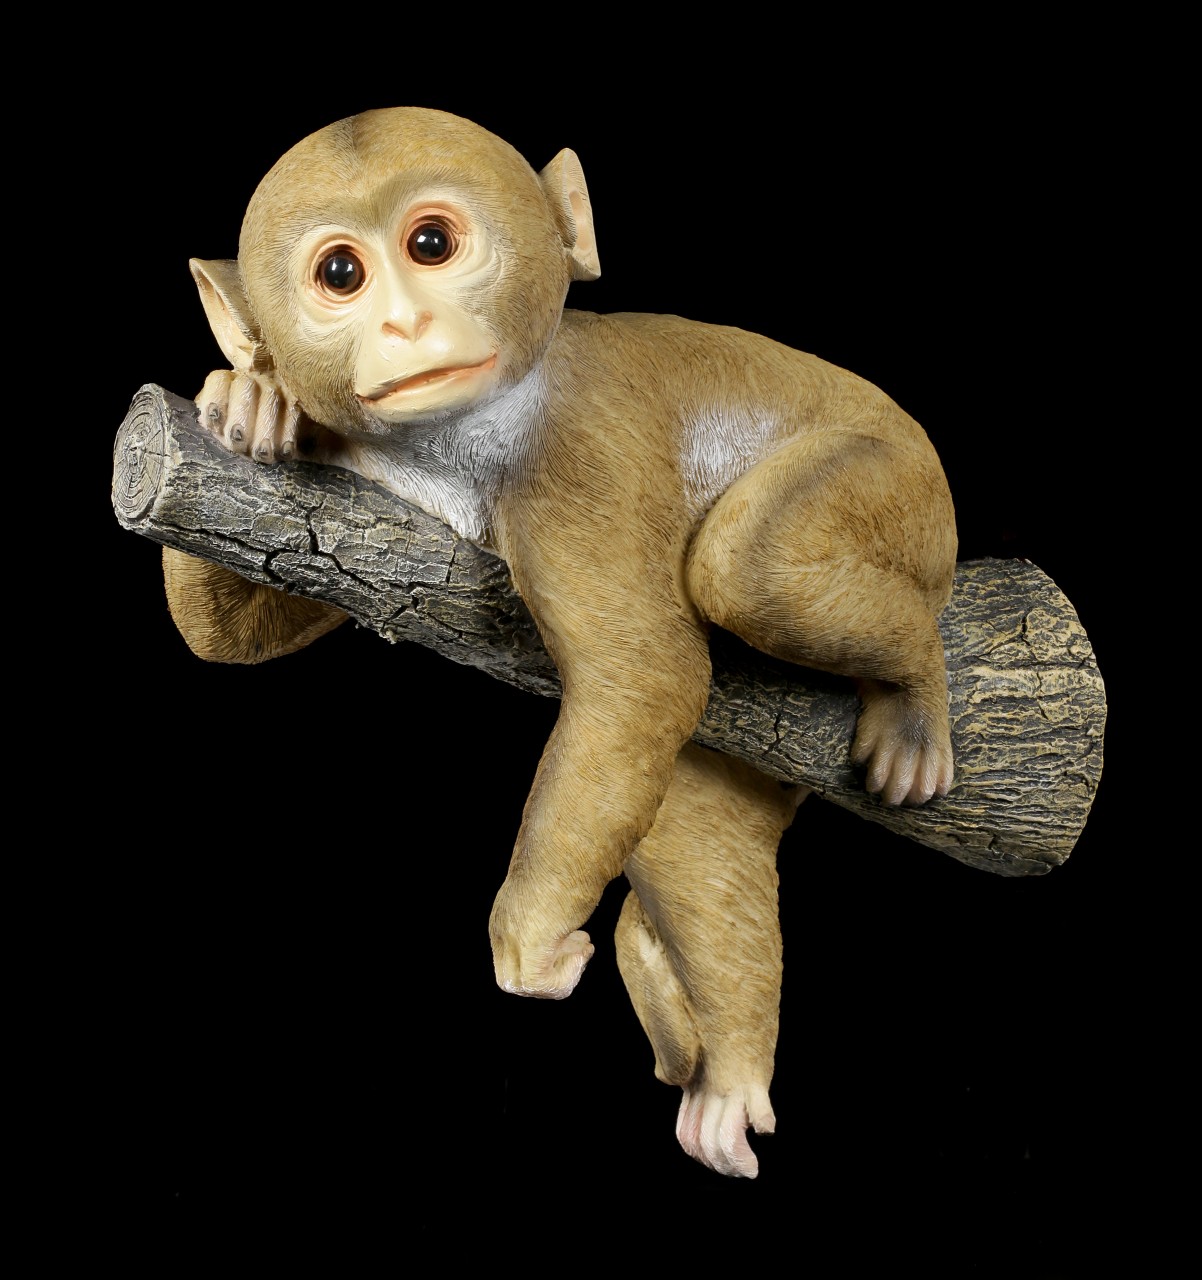 Garden Figurine - Monkey lies on Branch